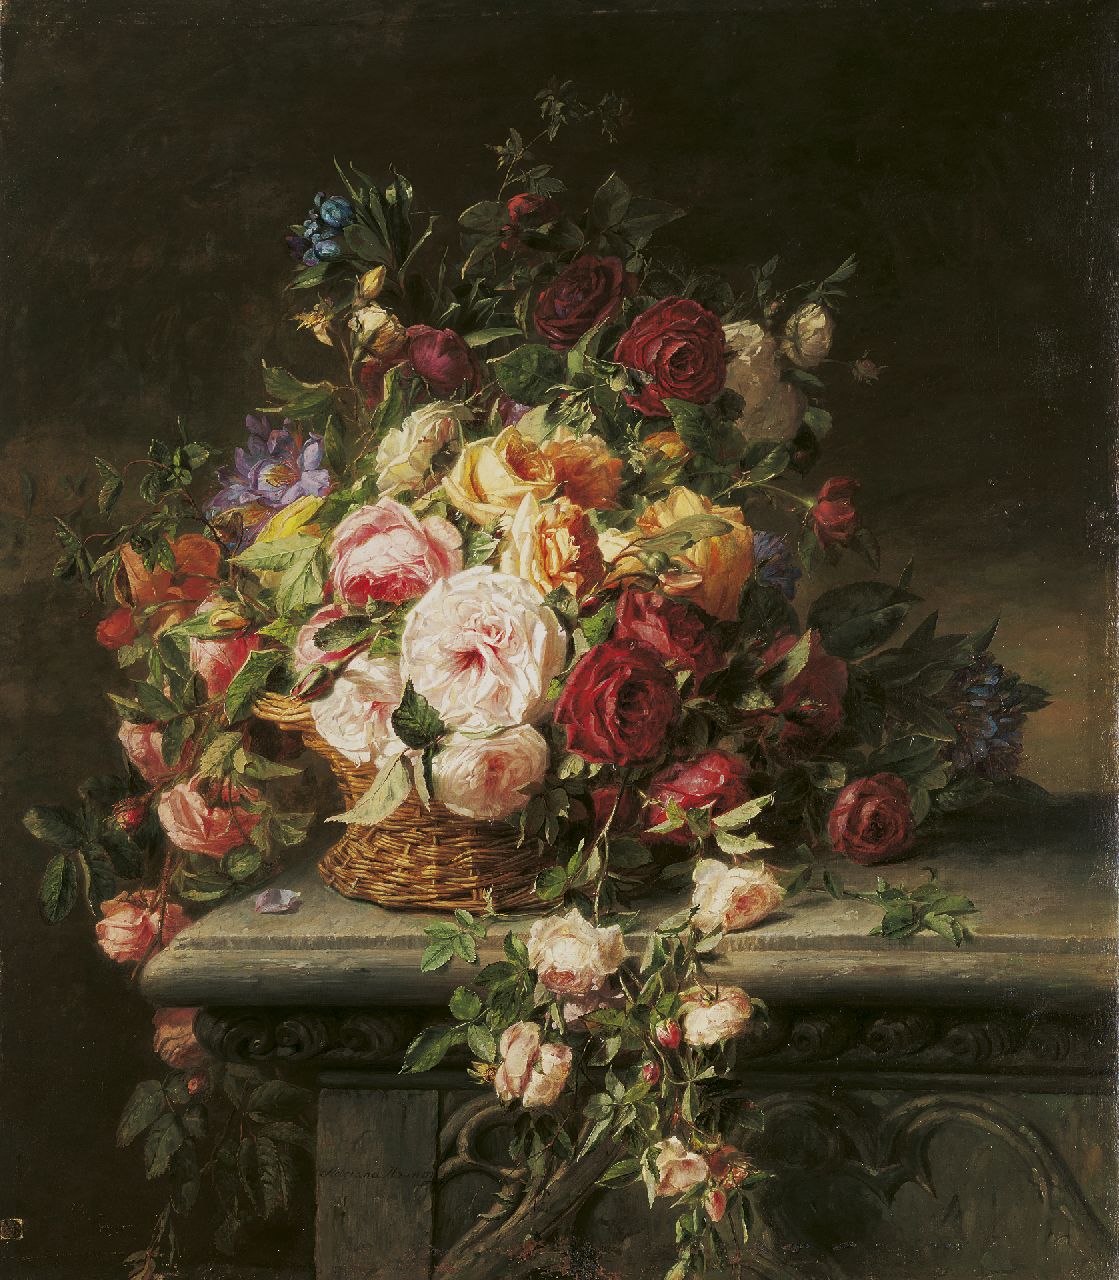 Haanen A.J.  | Adriana Johanna Haanen, Mand met rozen op een tuinbank, olieverf op doek 101,5 x 88,0 cm, gesigneerd links van het midden.